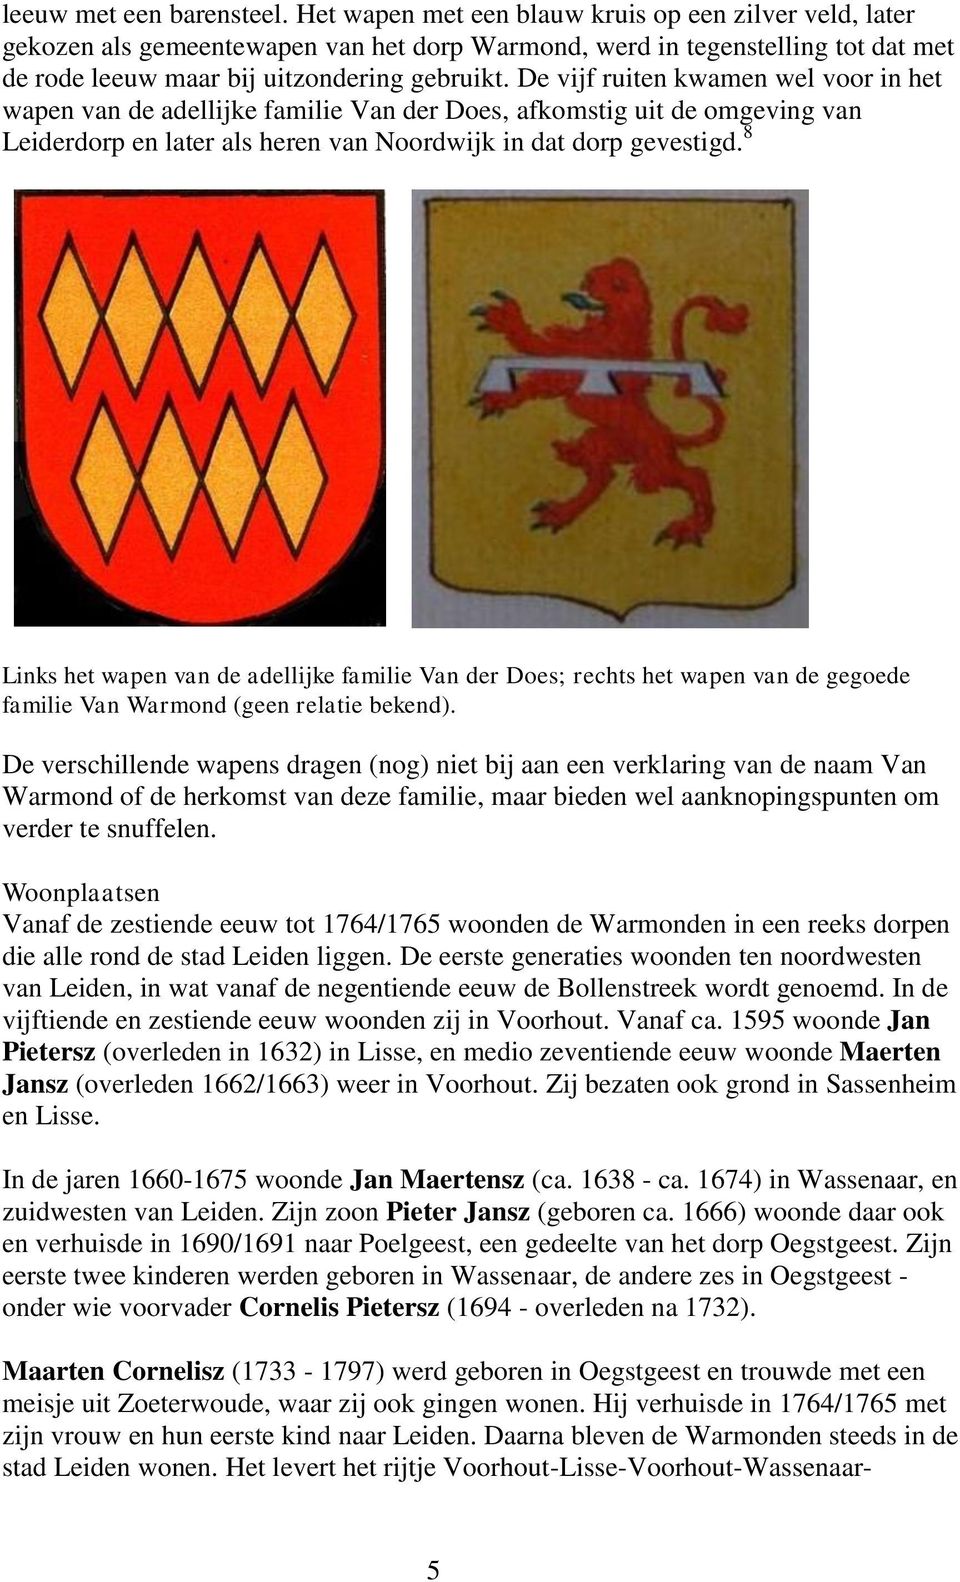 De vijf ruiten kwamen wel voor in het wapen van de adellijke familie Van der Does, afkomstig uit de omgeving van Leiderdorp en later als heren van Noordwijk in dat dorp gevestigd.